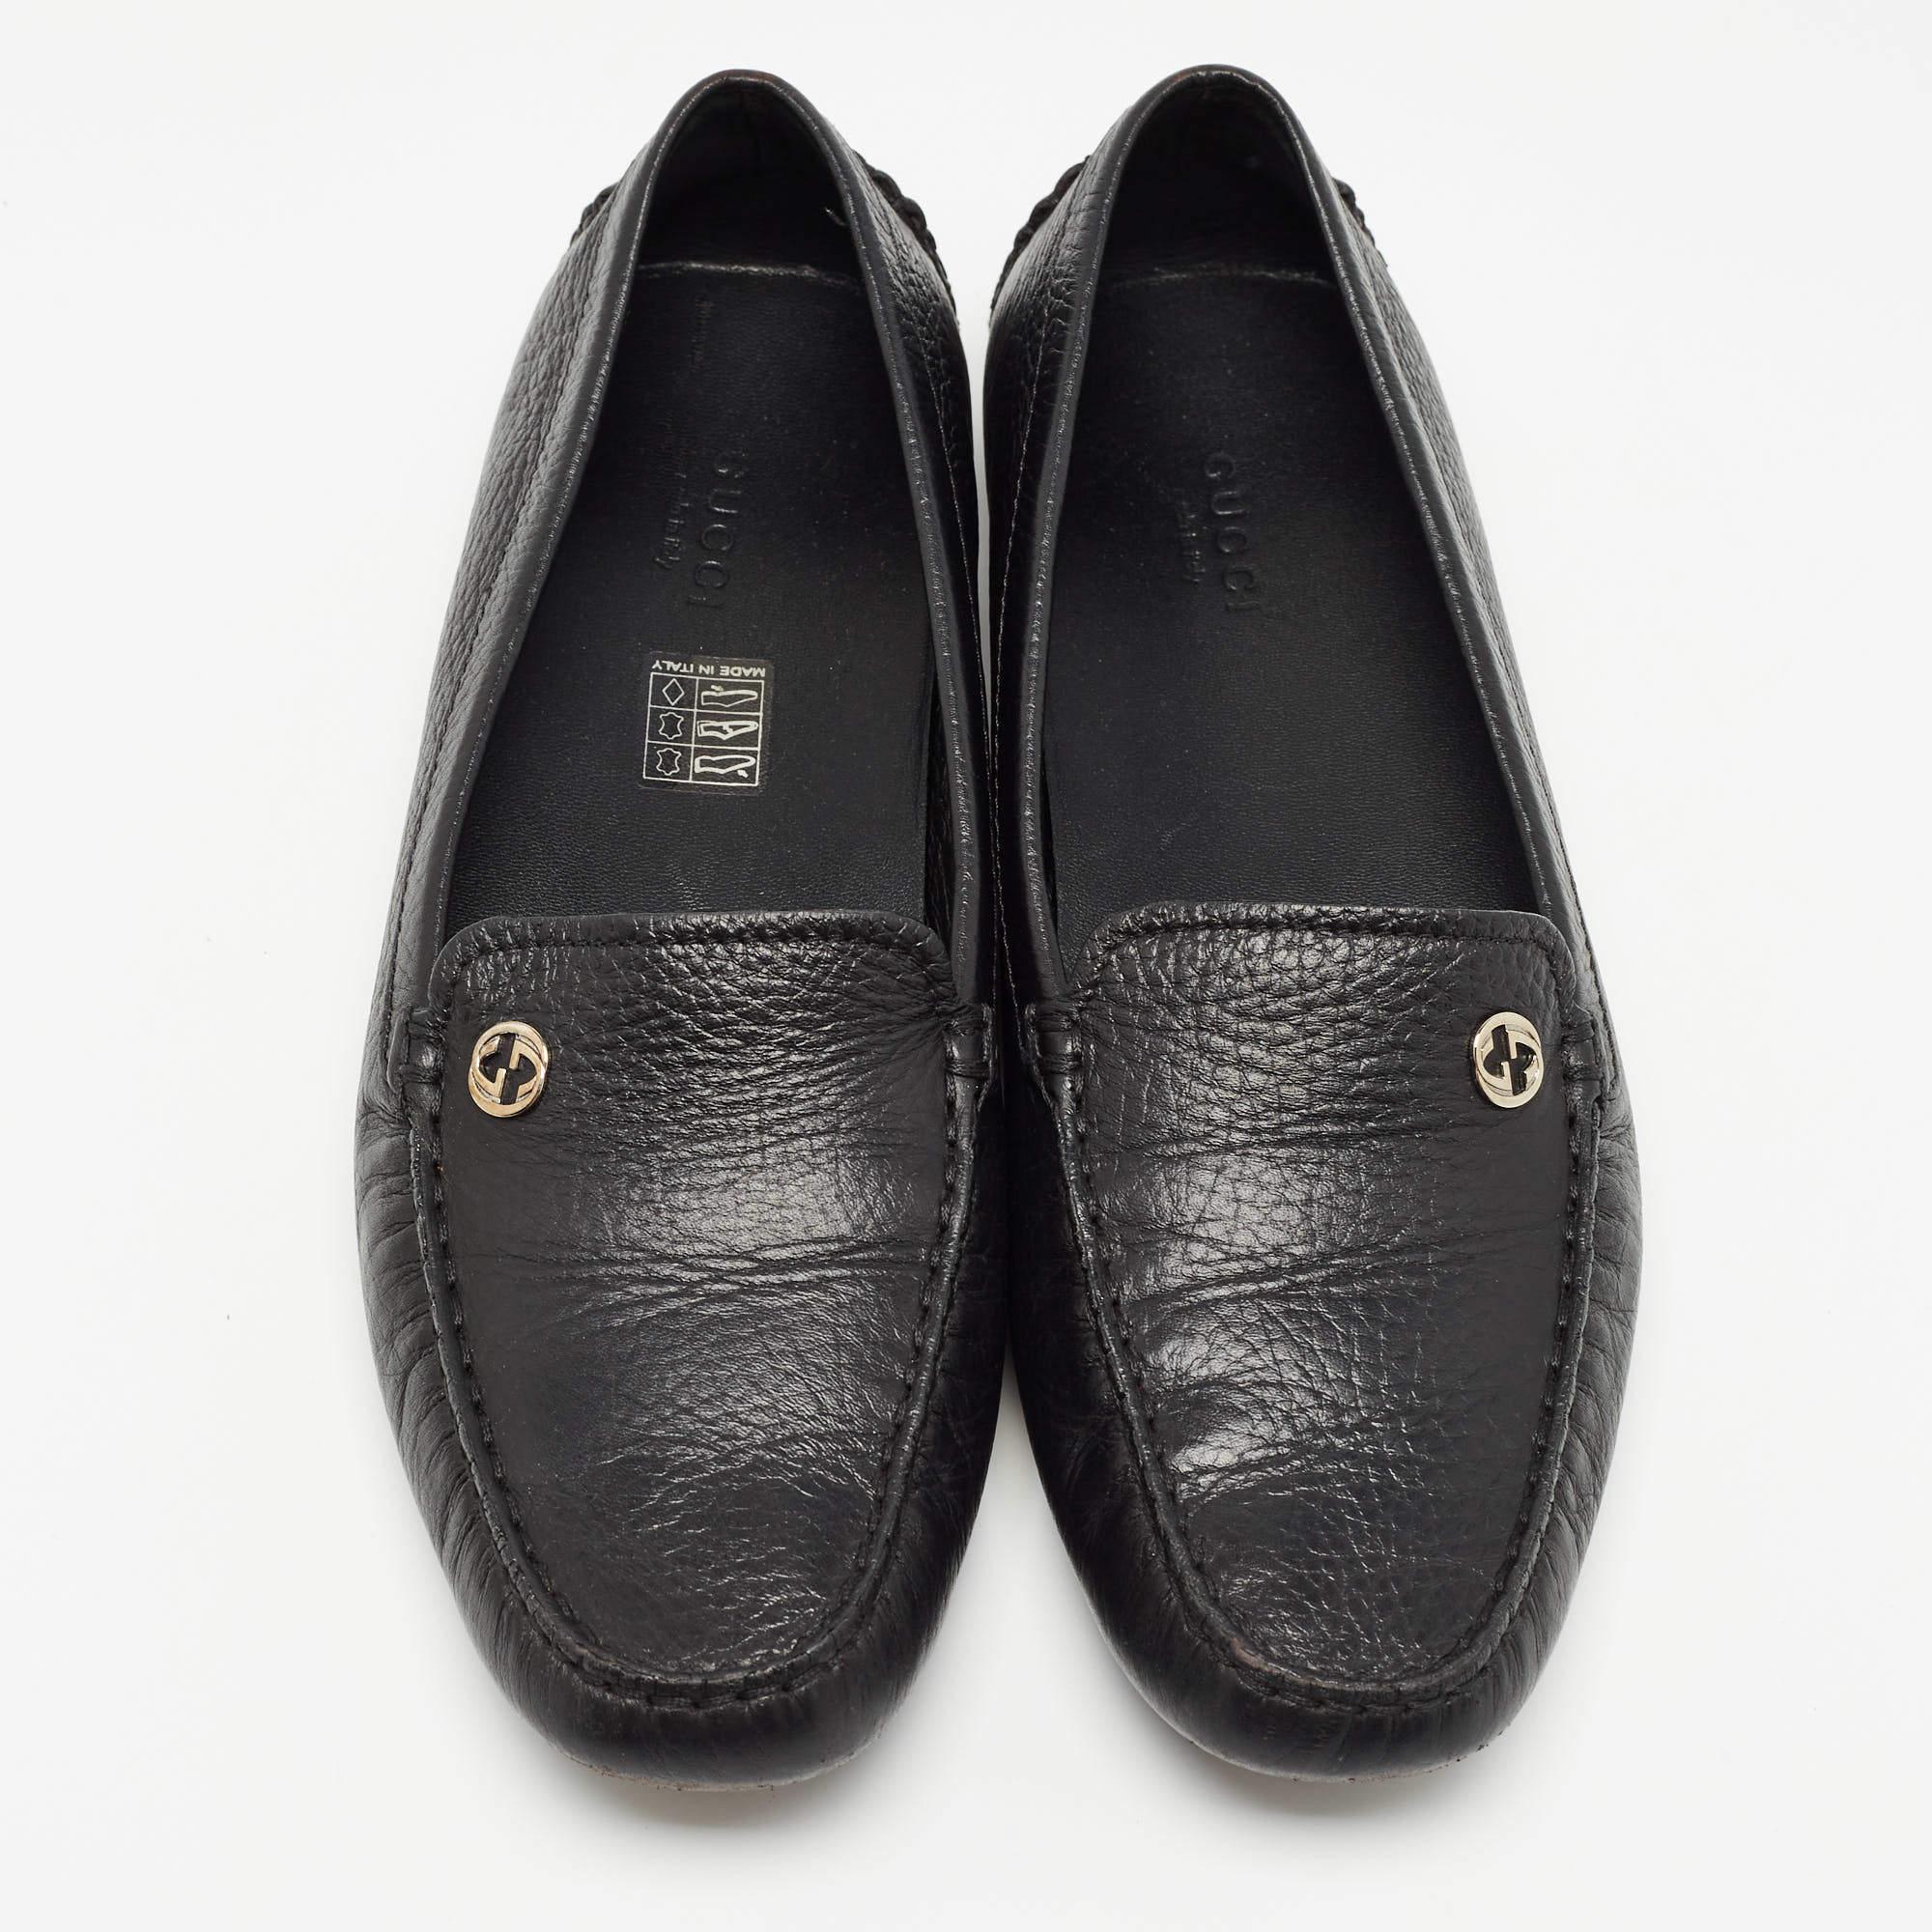 Um Ihre Kleidung perfekt zu ergänzen, bringen wir Ihnen dieses Paar Loafer, die nichts als Stil sprechen. Die Schuhe wurden mit viel Geschick gefertigt und sind so konzipiert, dass sie sich leicht anziehen lassen. Sie sind genau die richtige Wahl,